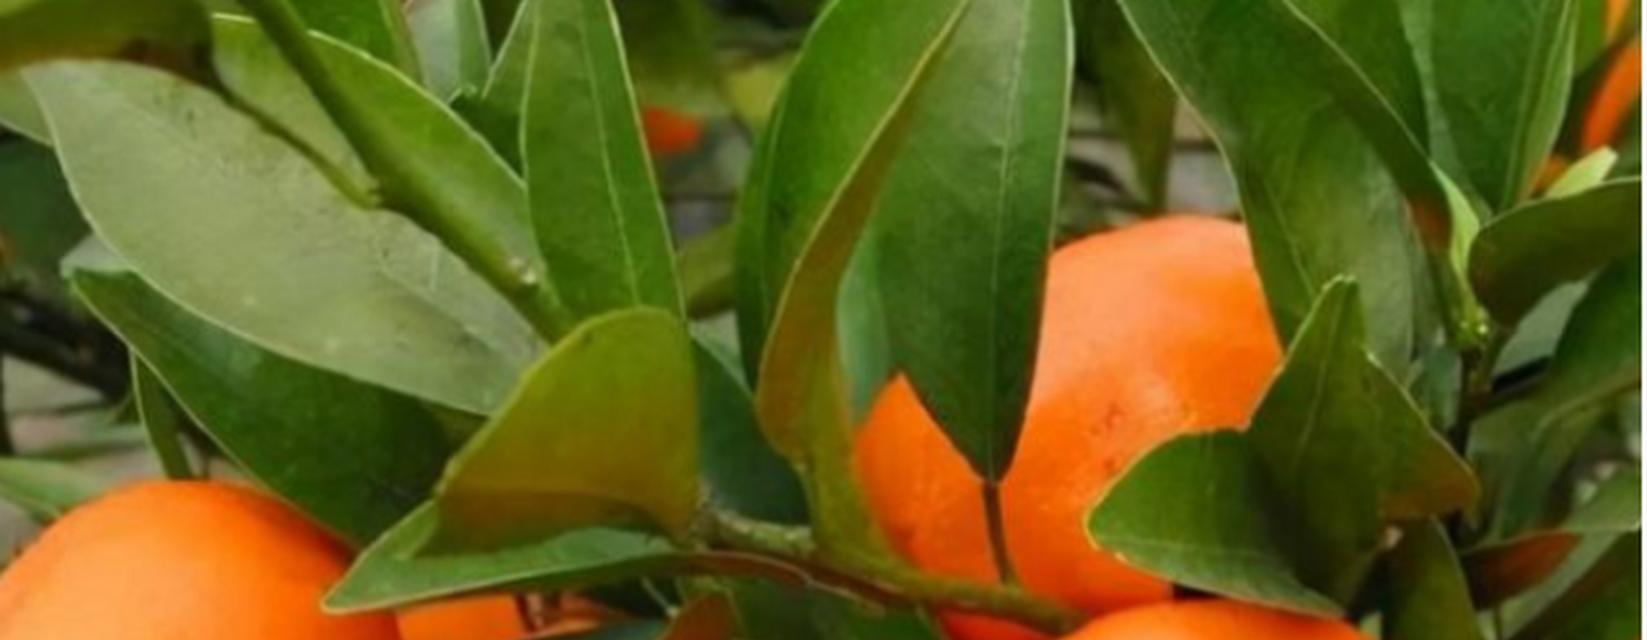 橙子（橙子的象征意义及其在文化中的重要性）